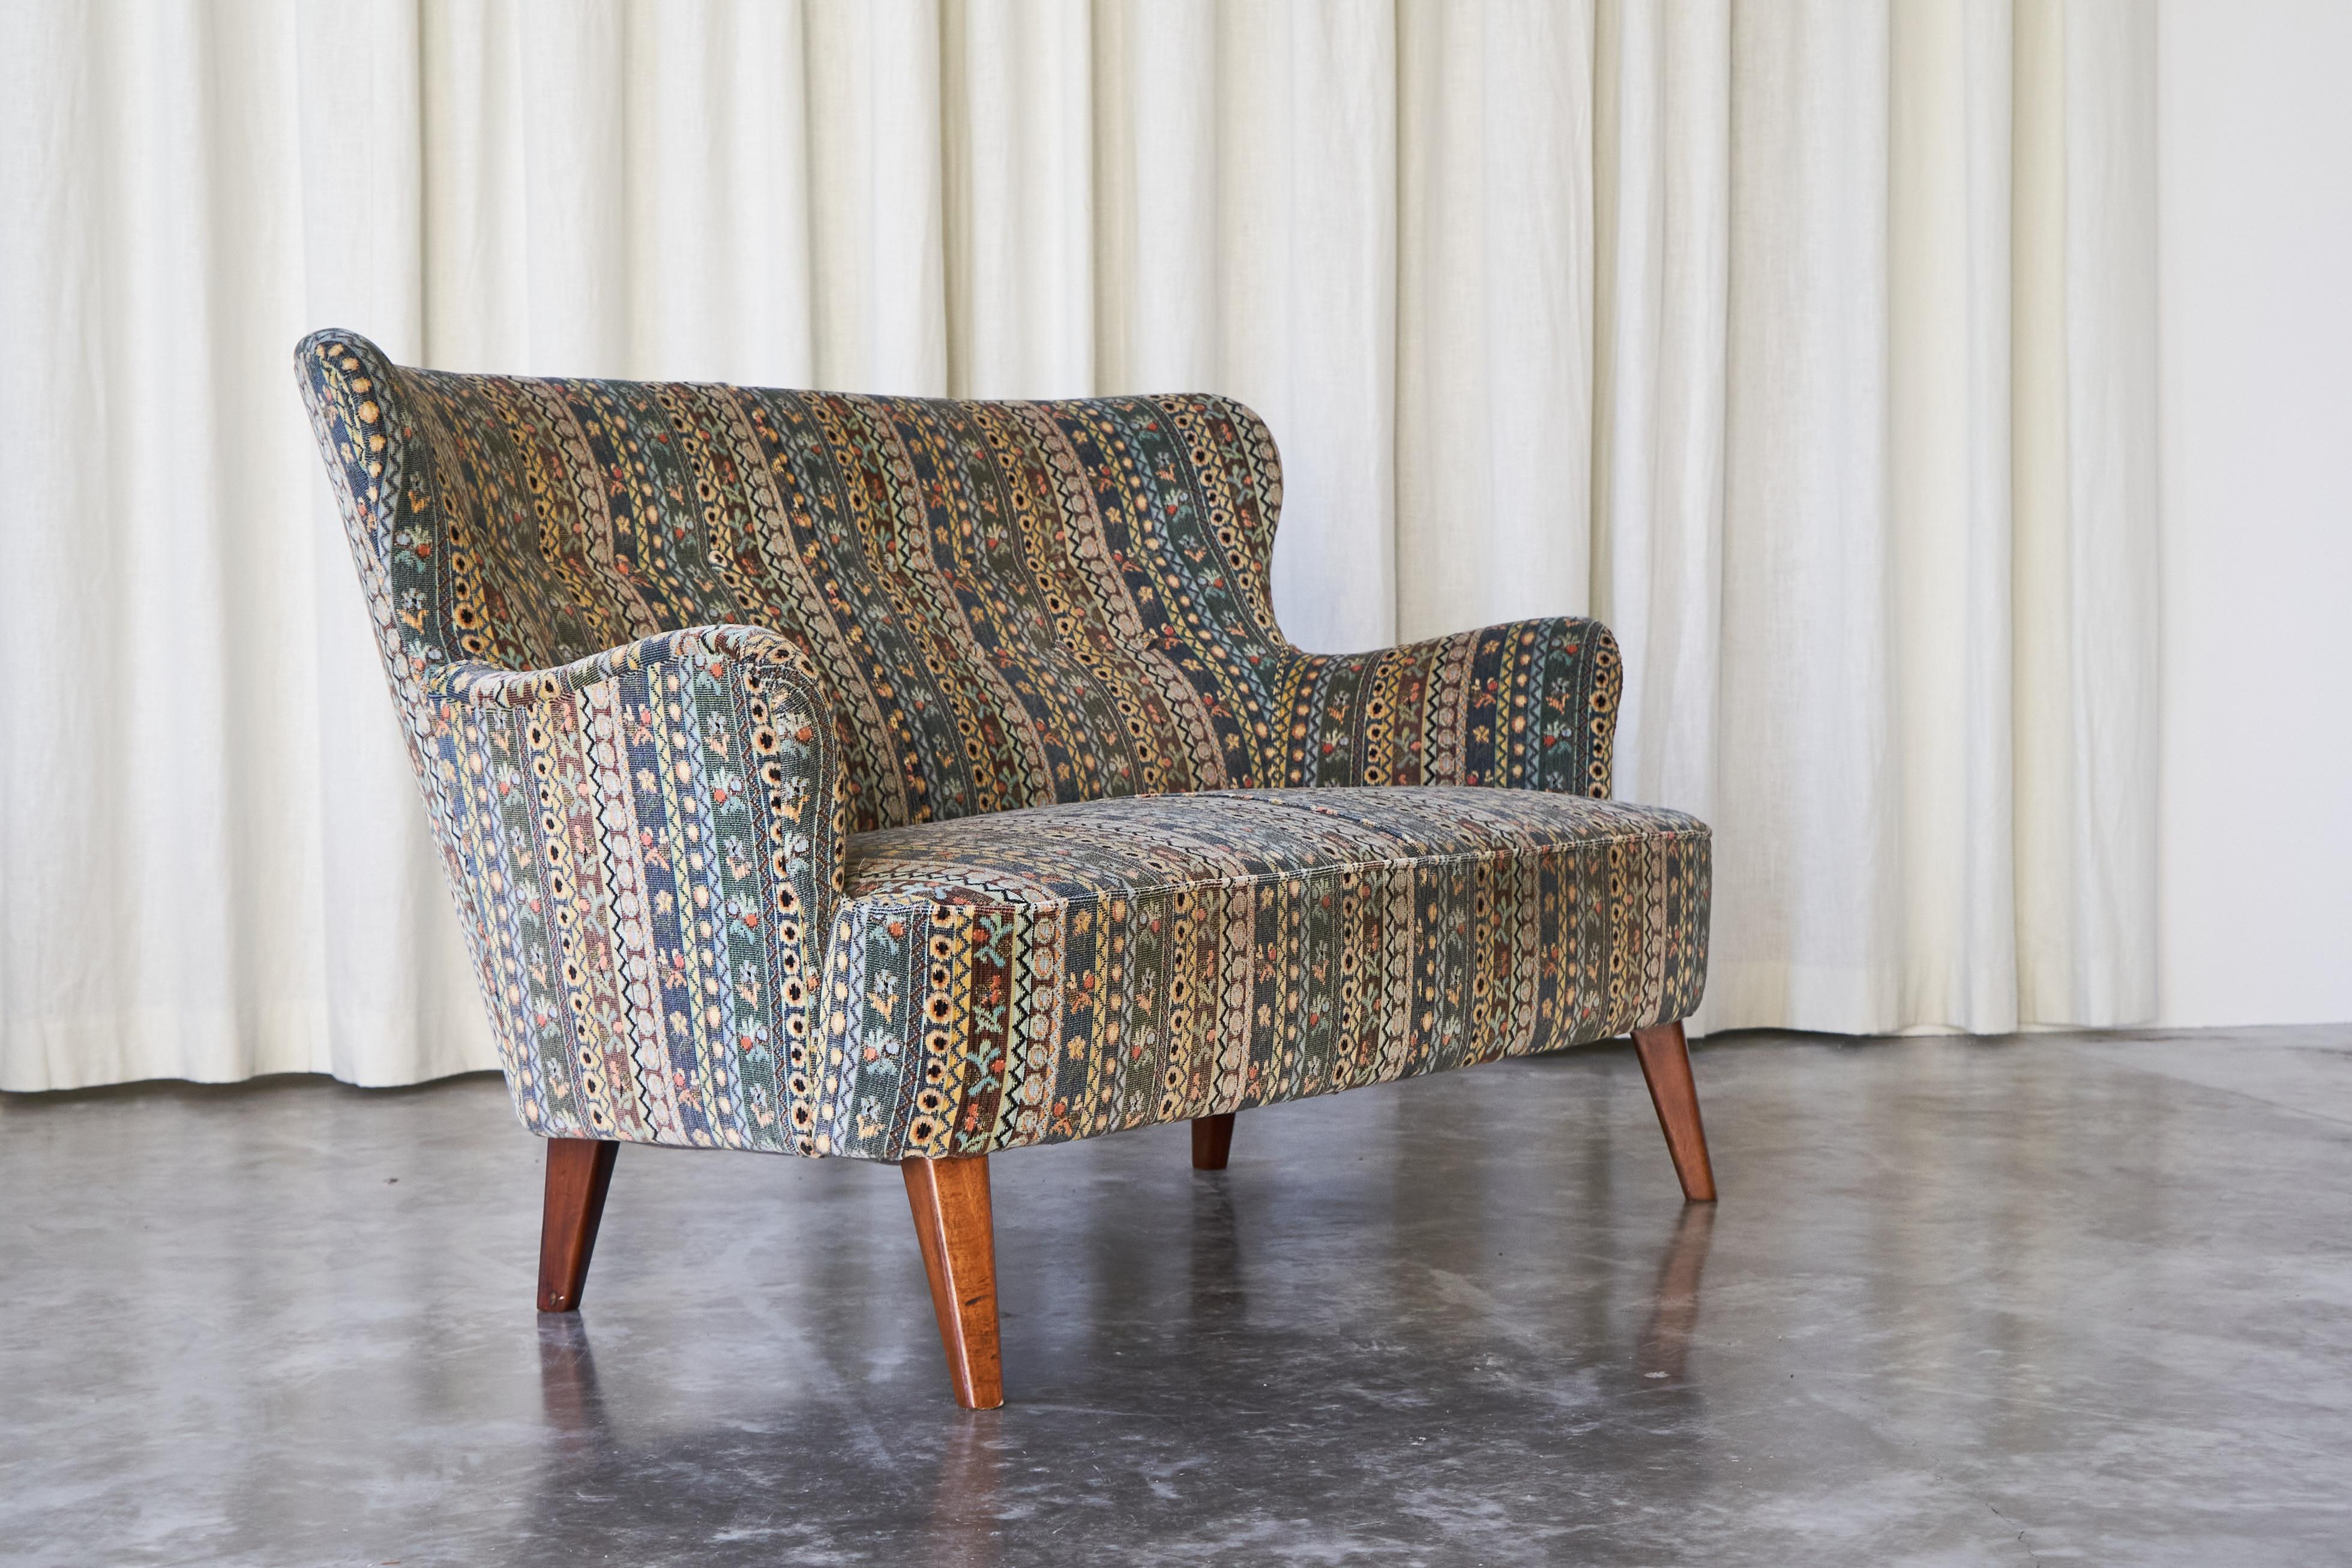 Dieses wunderbare Sofa wurde von Theo Ruth für Wagemans & van Tuinen / Artifort entworfen und 1956 hergestellt. 

Das Design dieses Sofas ist klassisch im Mid-Century- und skandinavischen Stil gehalten, wird aber durch die fantastische farbige